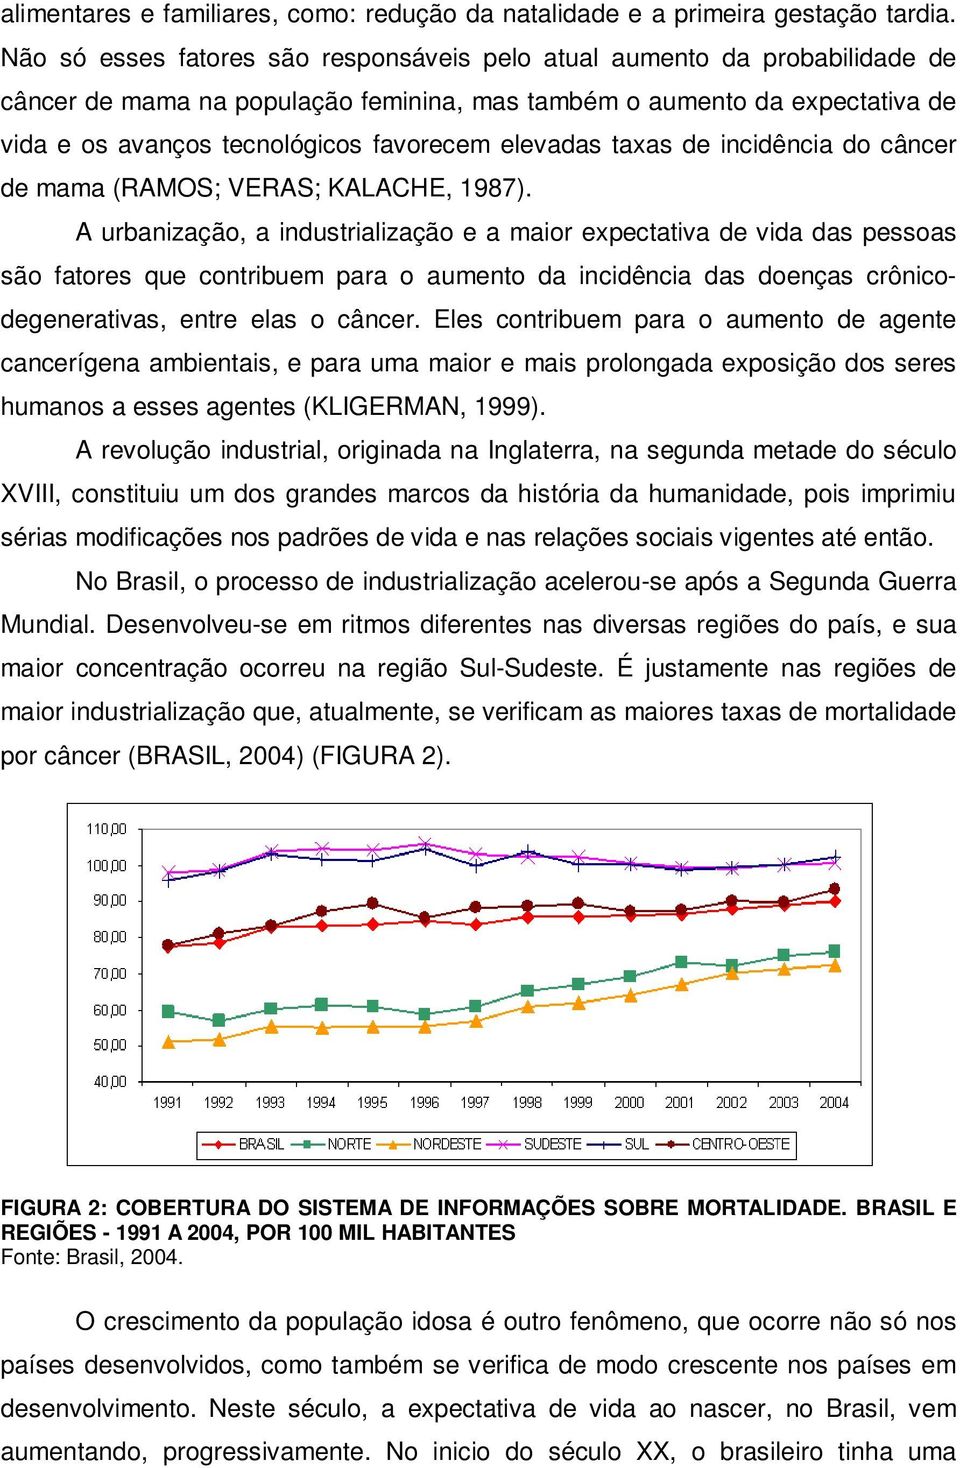 elevadas taxas de incidência do câncer de mama (RAMOS; VERAS; KALACHE, 1987).